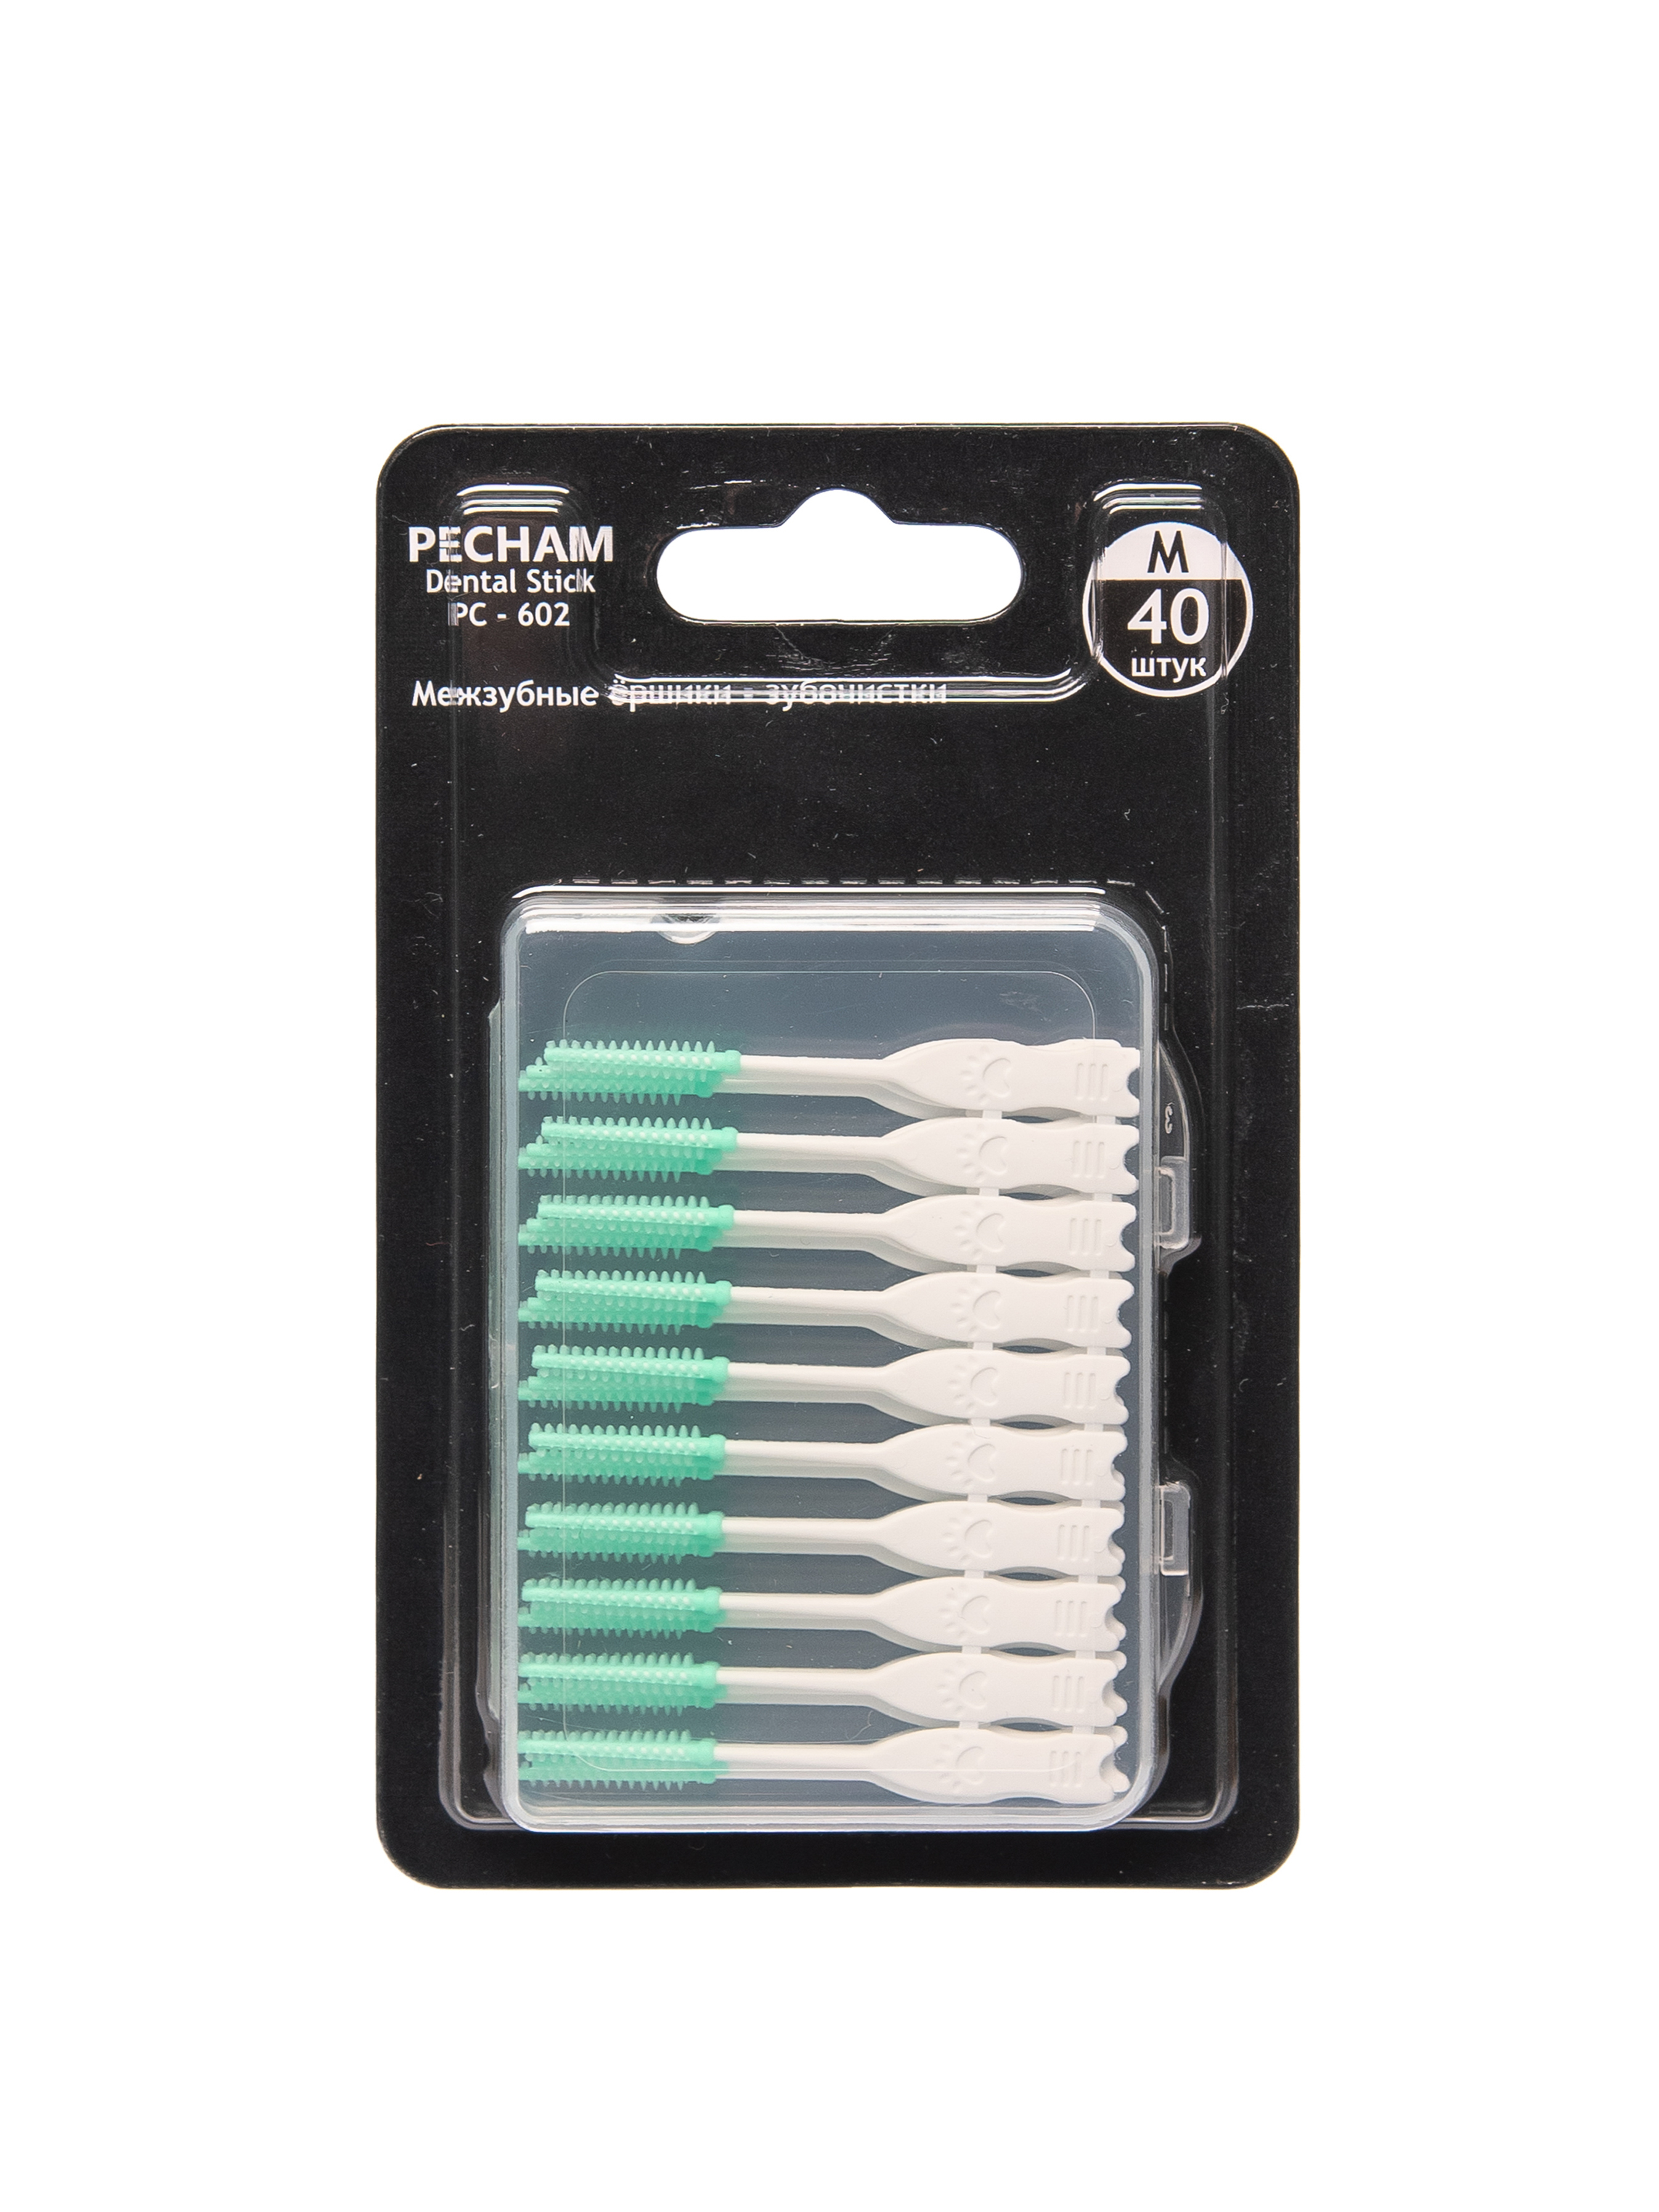 Межзубные ёршики-зубочистки PECHAM Dental Stick 40 шт